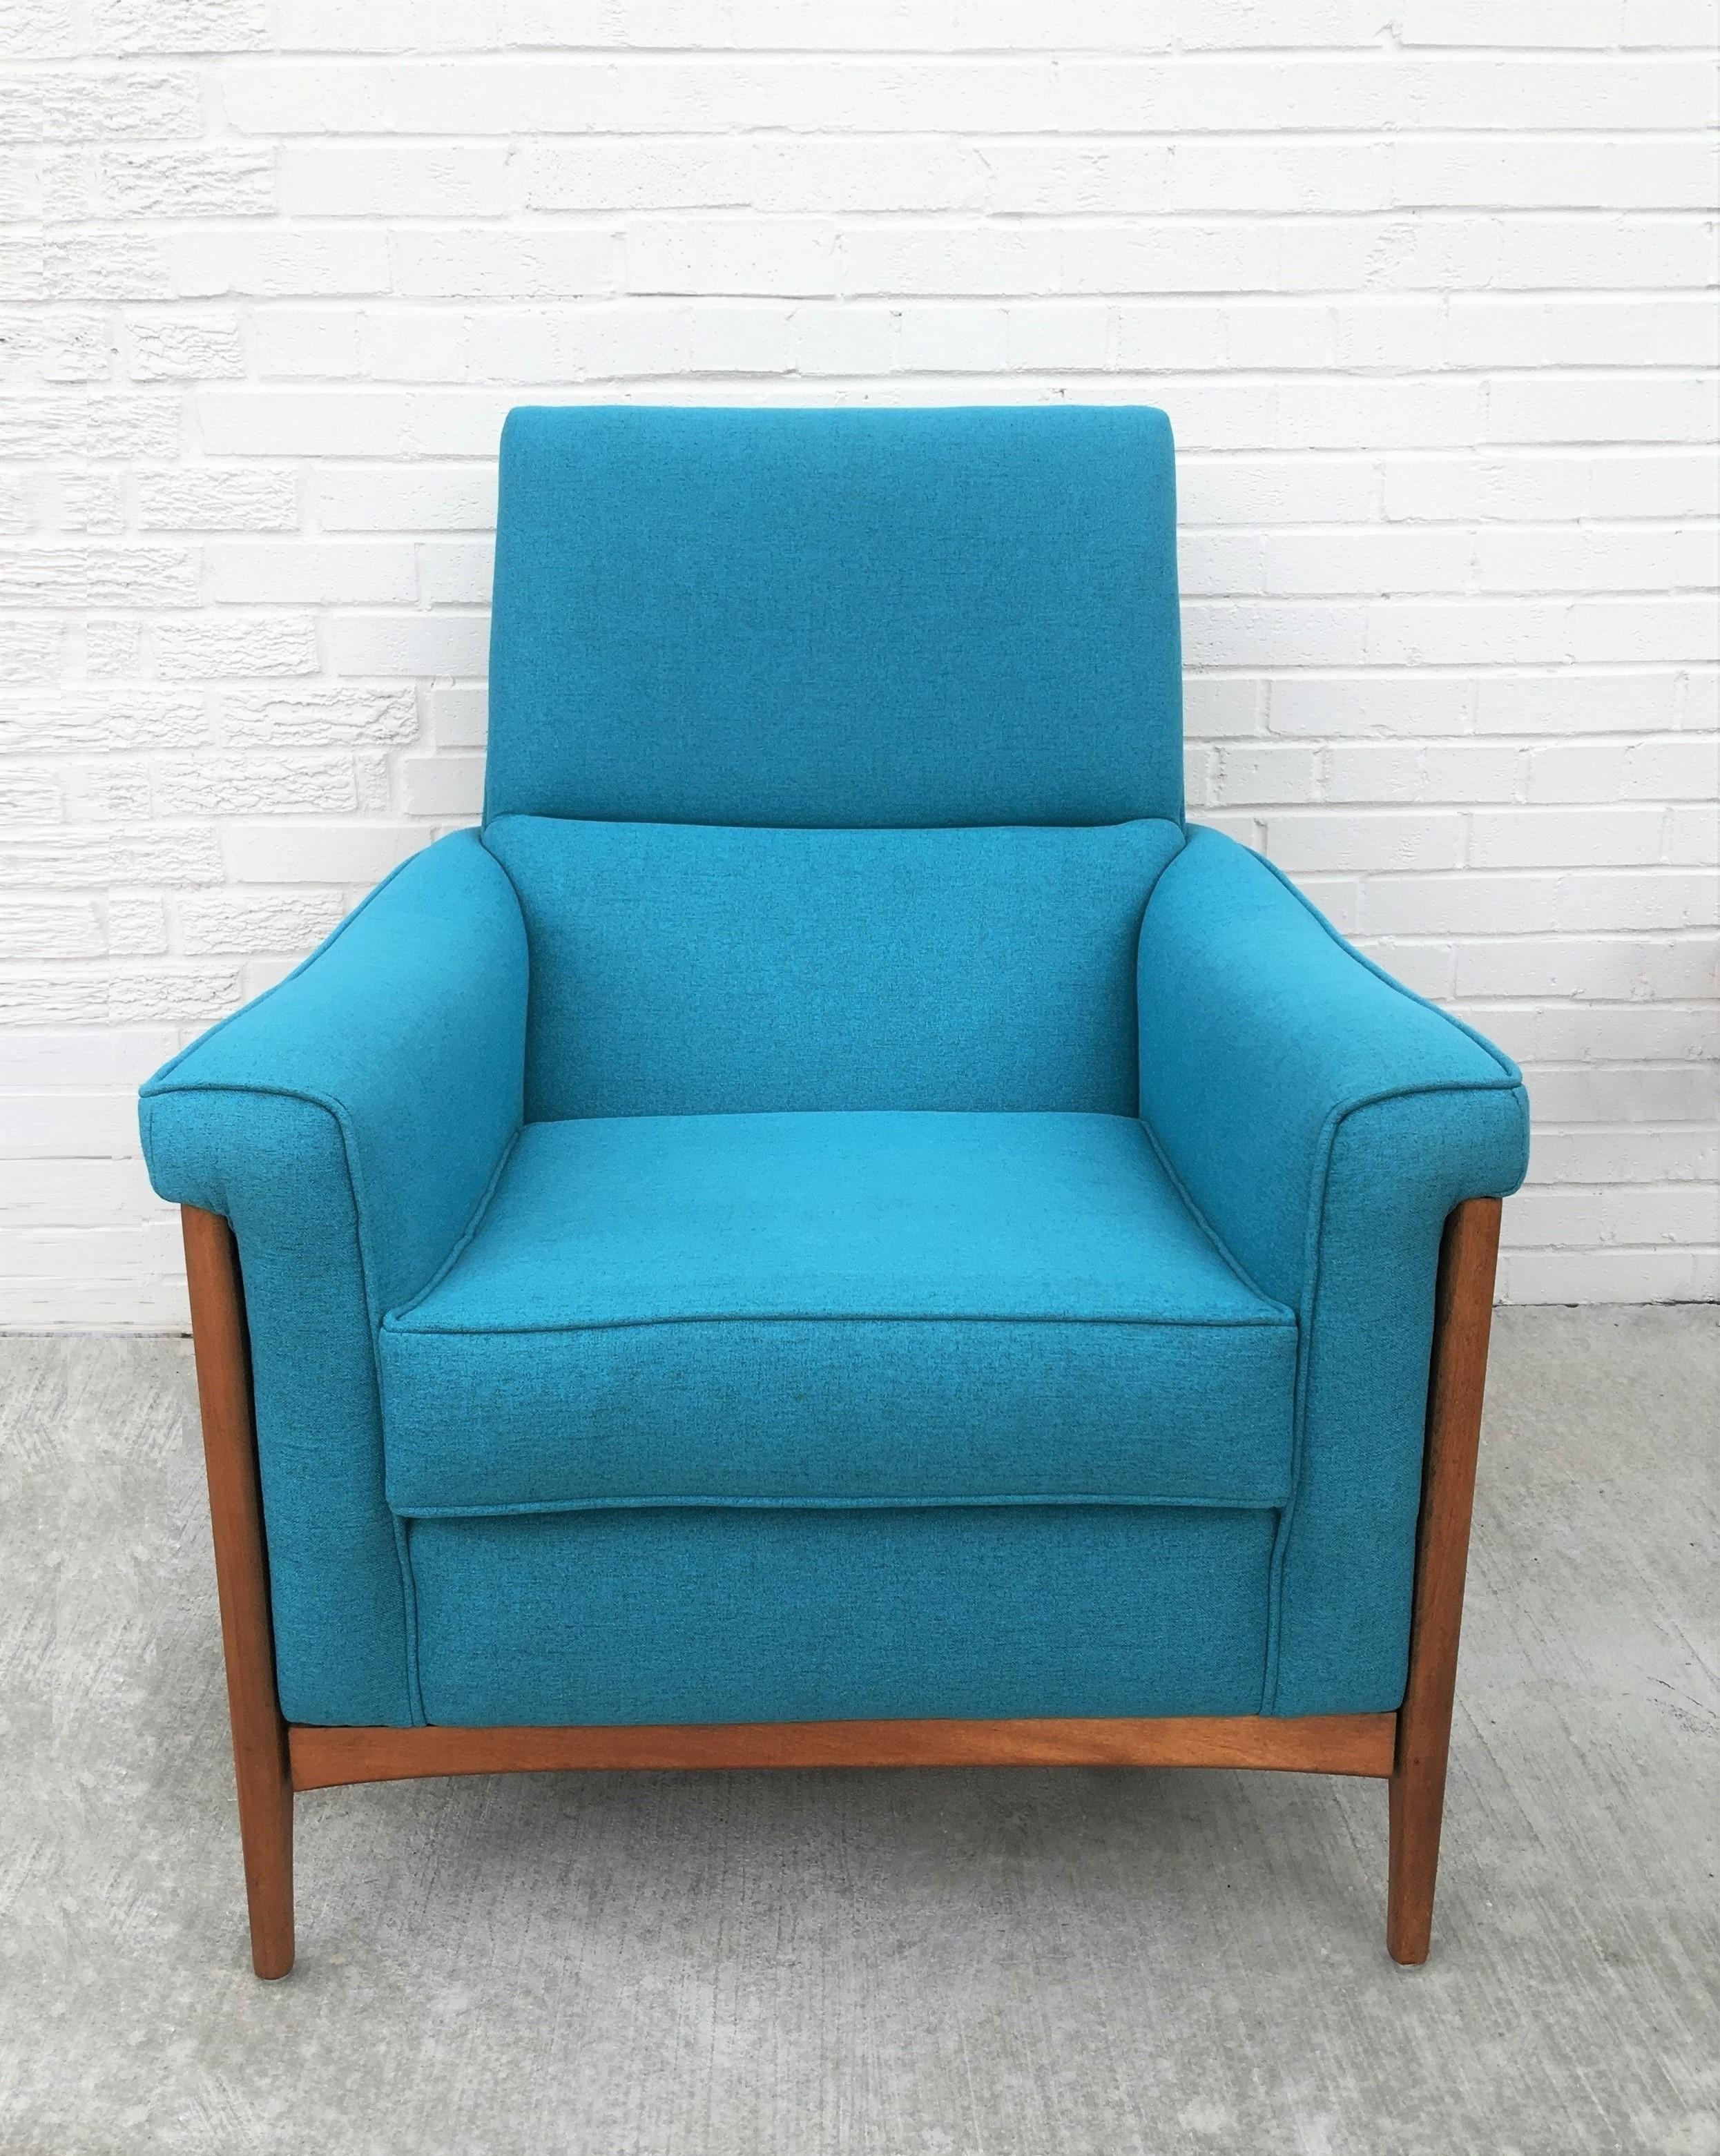 Gut gestaltetes Paar skulpturaler Sessel von Kroehler Co. Mit blauem Stoffbezug, massiver amerikanischer Holzkonstruktion und bequemen tiefen Sitzen. Die skulpturalen Beine reichen bis zu den schrägen Armlehnen der Stühle, die jedem Raum ein edles